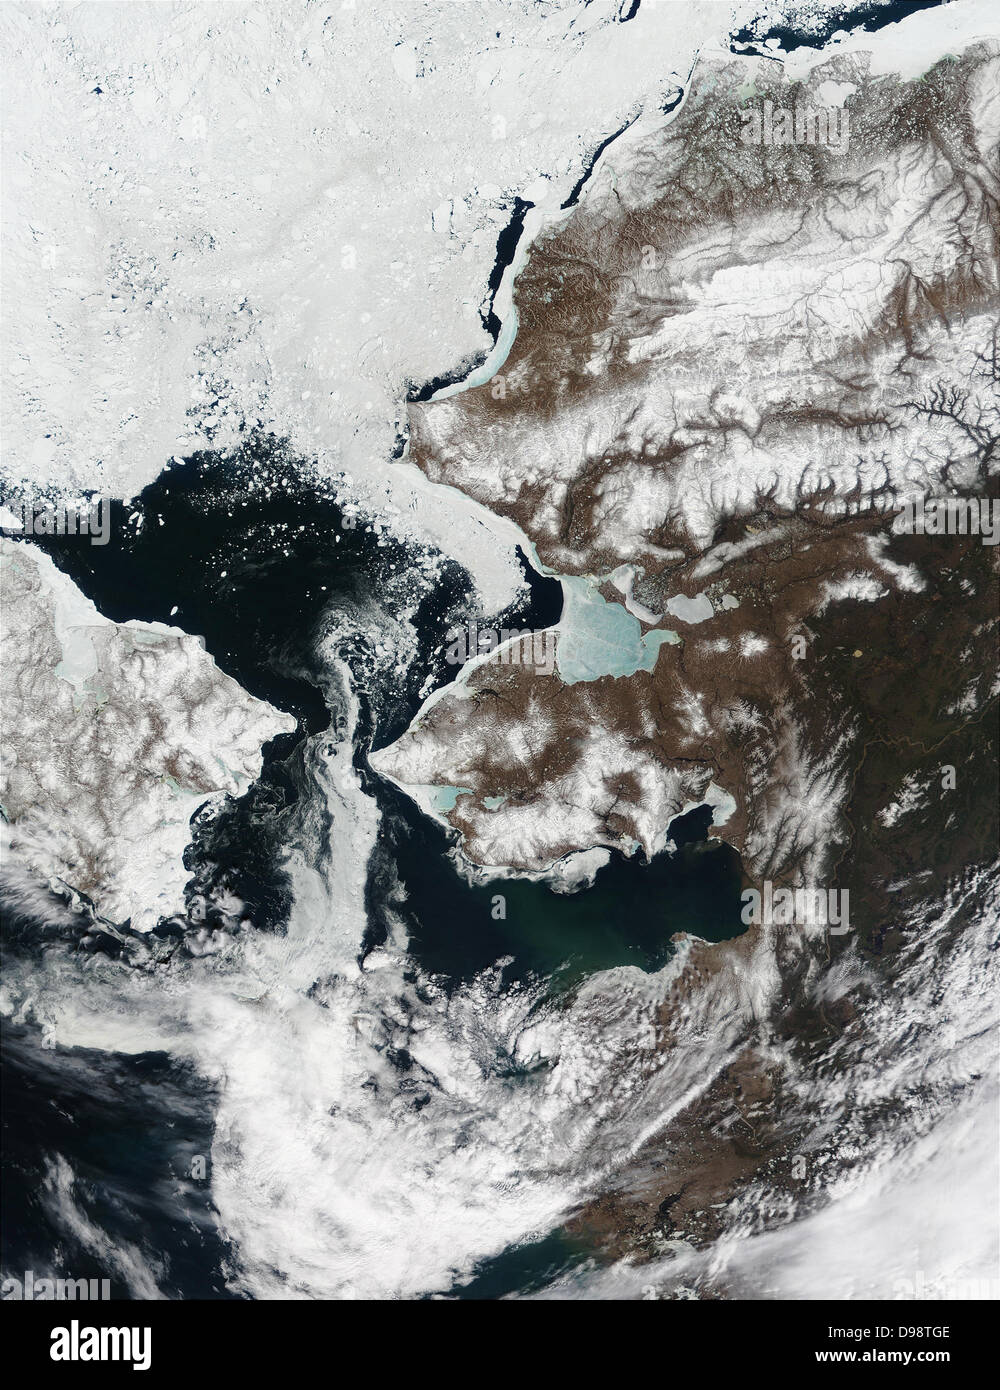 La neve è ritirata dall'Alaska.s il paesaggio e lo stretto di Bering, che separa l'Alaska della penisola di Seward (centro) dalla Siberia, è in gran parte privo di ghiaccio in questa immagine dello spettroradiometro MODIS da Maggio 22, 2002. Mare di ghiaccio nel Kotzebue Sound (a nord della penisola di Seward) è assottigliata notevolmente e ora appare blu cielo, come il riflesso azzurro dell'acqua mostra attraverso dal di sotto. Mare di ghiaccio è ritirata verso nord nel mare Chukchi. Foto Stock